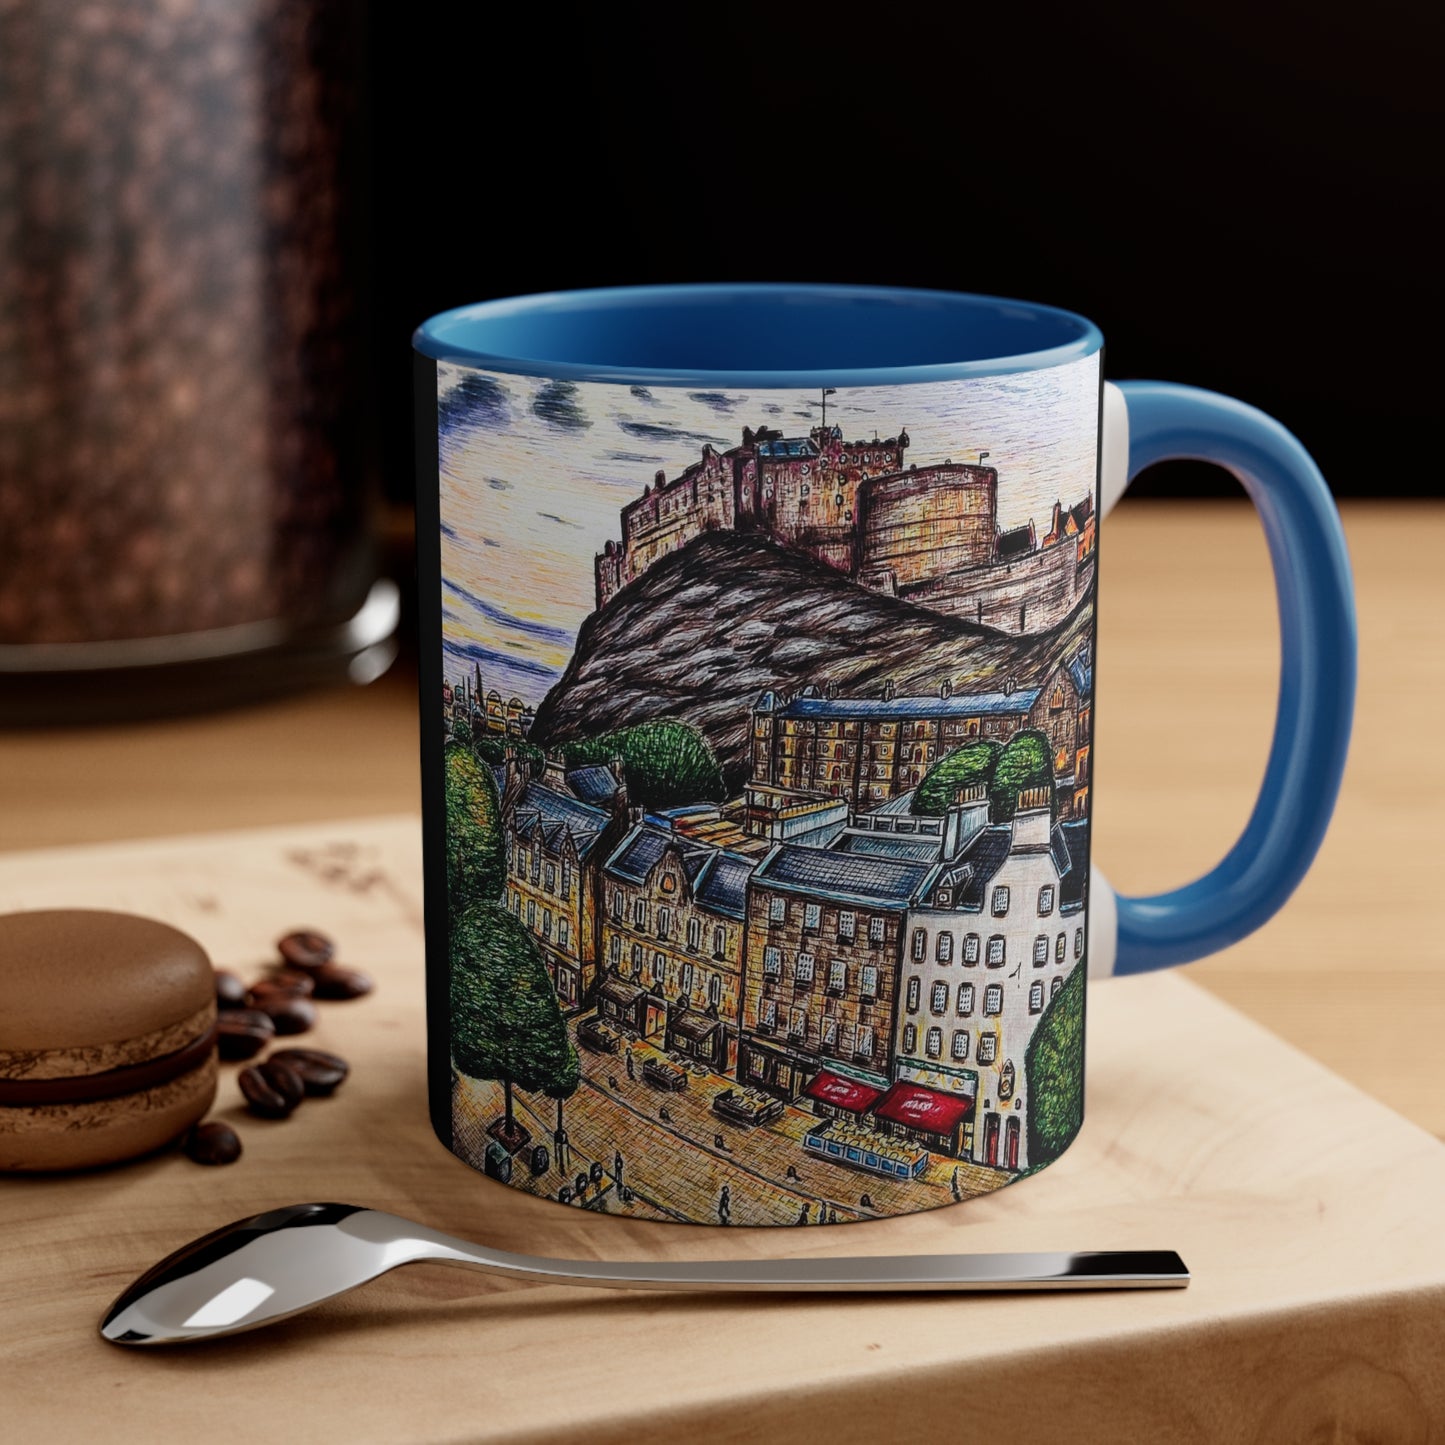 CeramicCoffee Mug, 11oz- Edinburgh Grass-market Design- gift, home